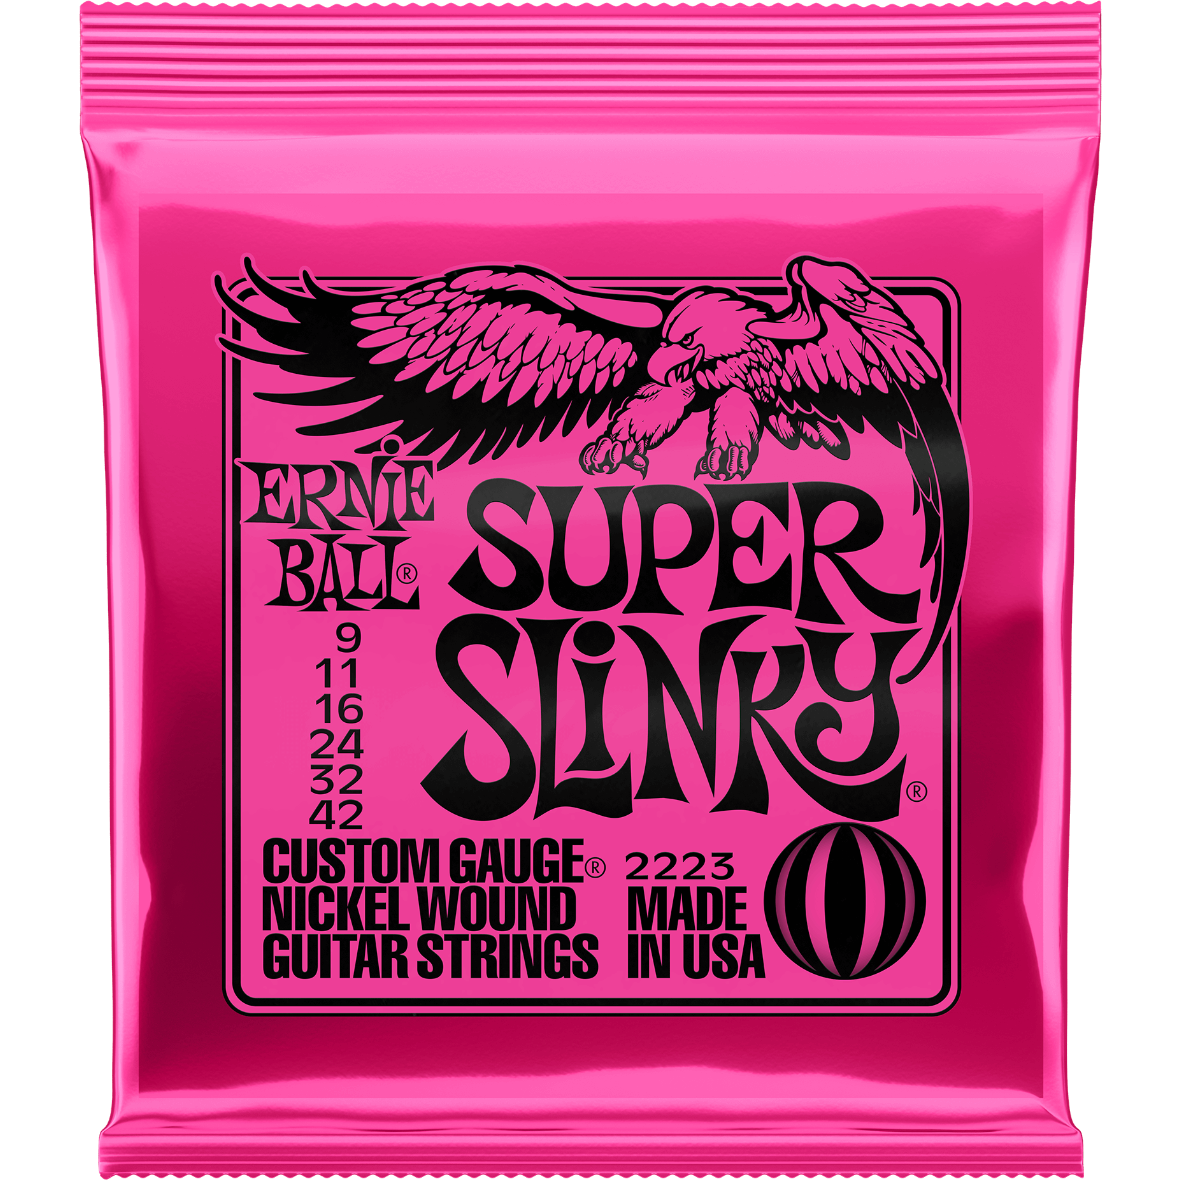 Ernie Ball Super Slinky Nickel Wound Electric Guitar Strings 9-42 Gauge